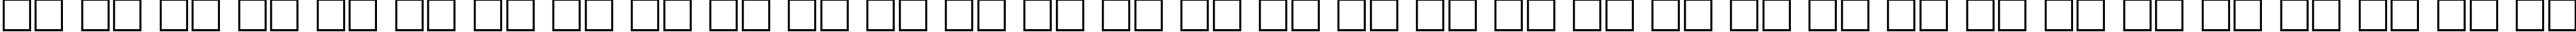 Пример написания русского алфавита шрифтом GOST type A